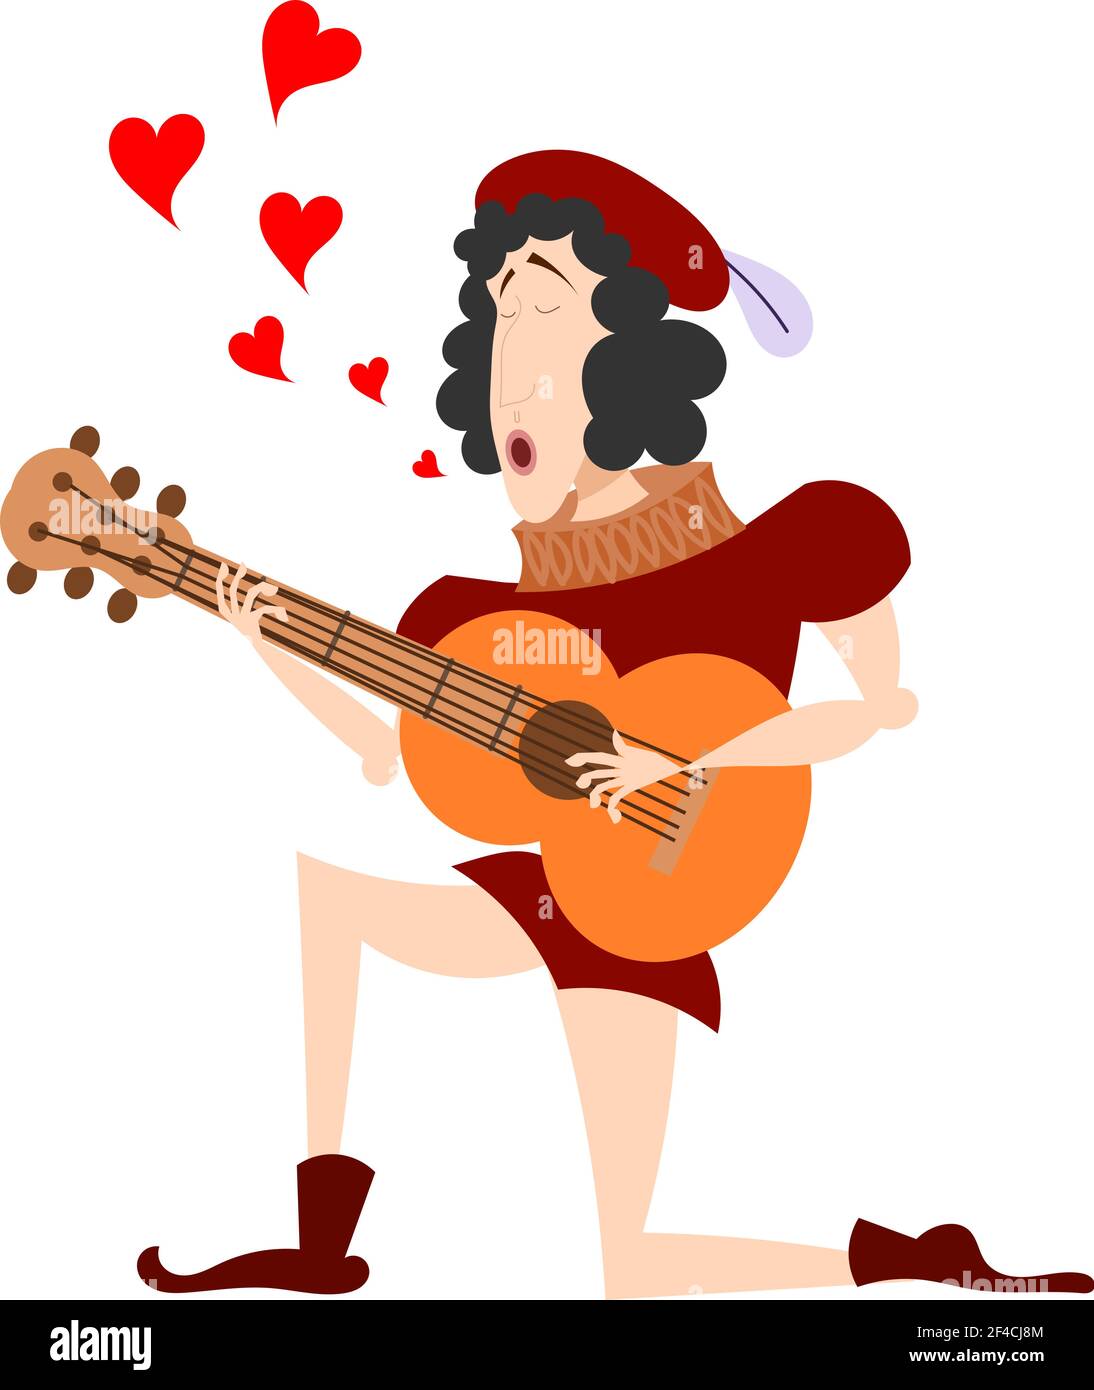 Immagine a colori di una chitarra medievale su un ginocchio. Il cantante con una serenata di chitarra. Simbolo dell'amore, San Valentino&rsquo;s Day. Illustrazione vettoriale stock Illustrazione Vettoriale